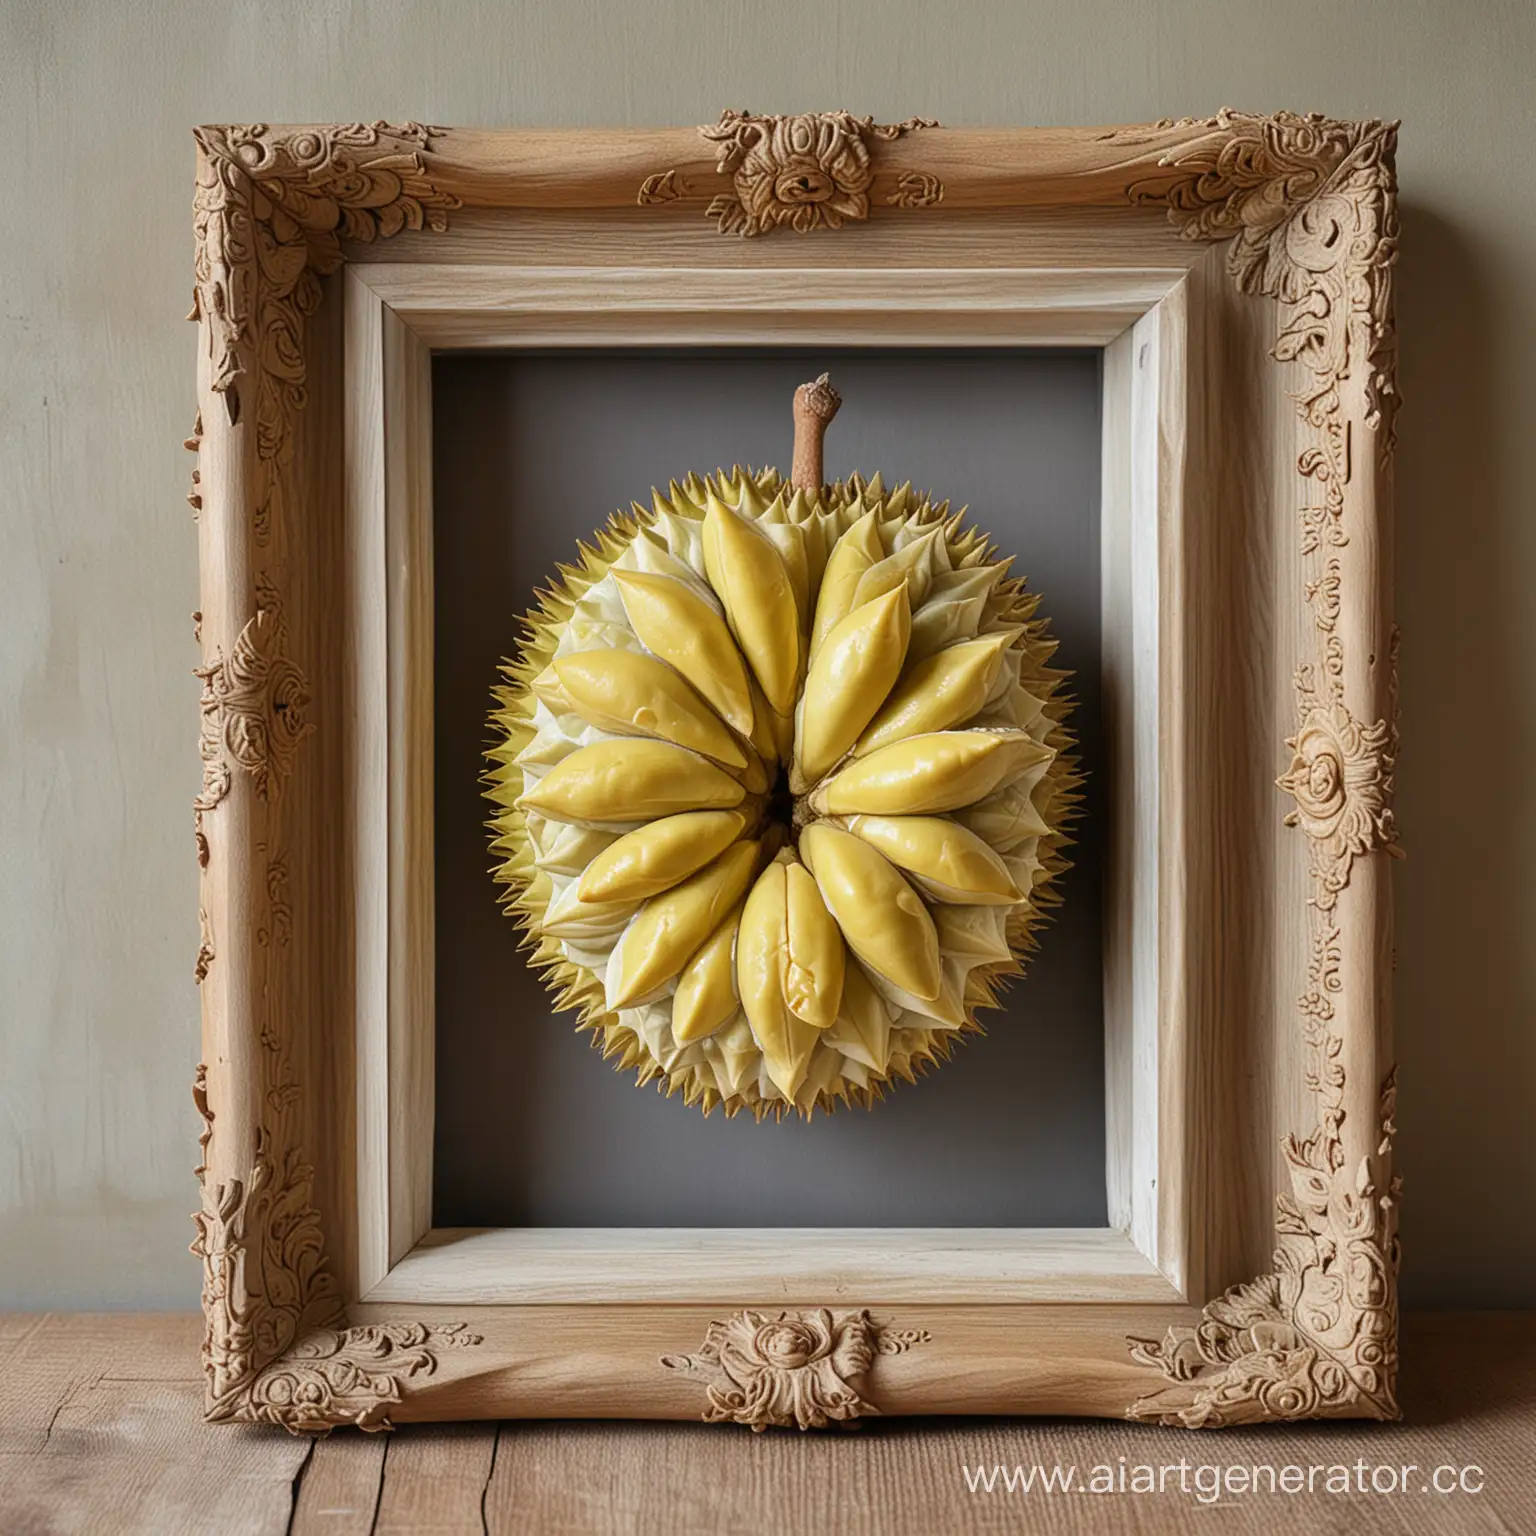 красивый и молодой плод дуриана в портретной рамке